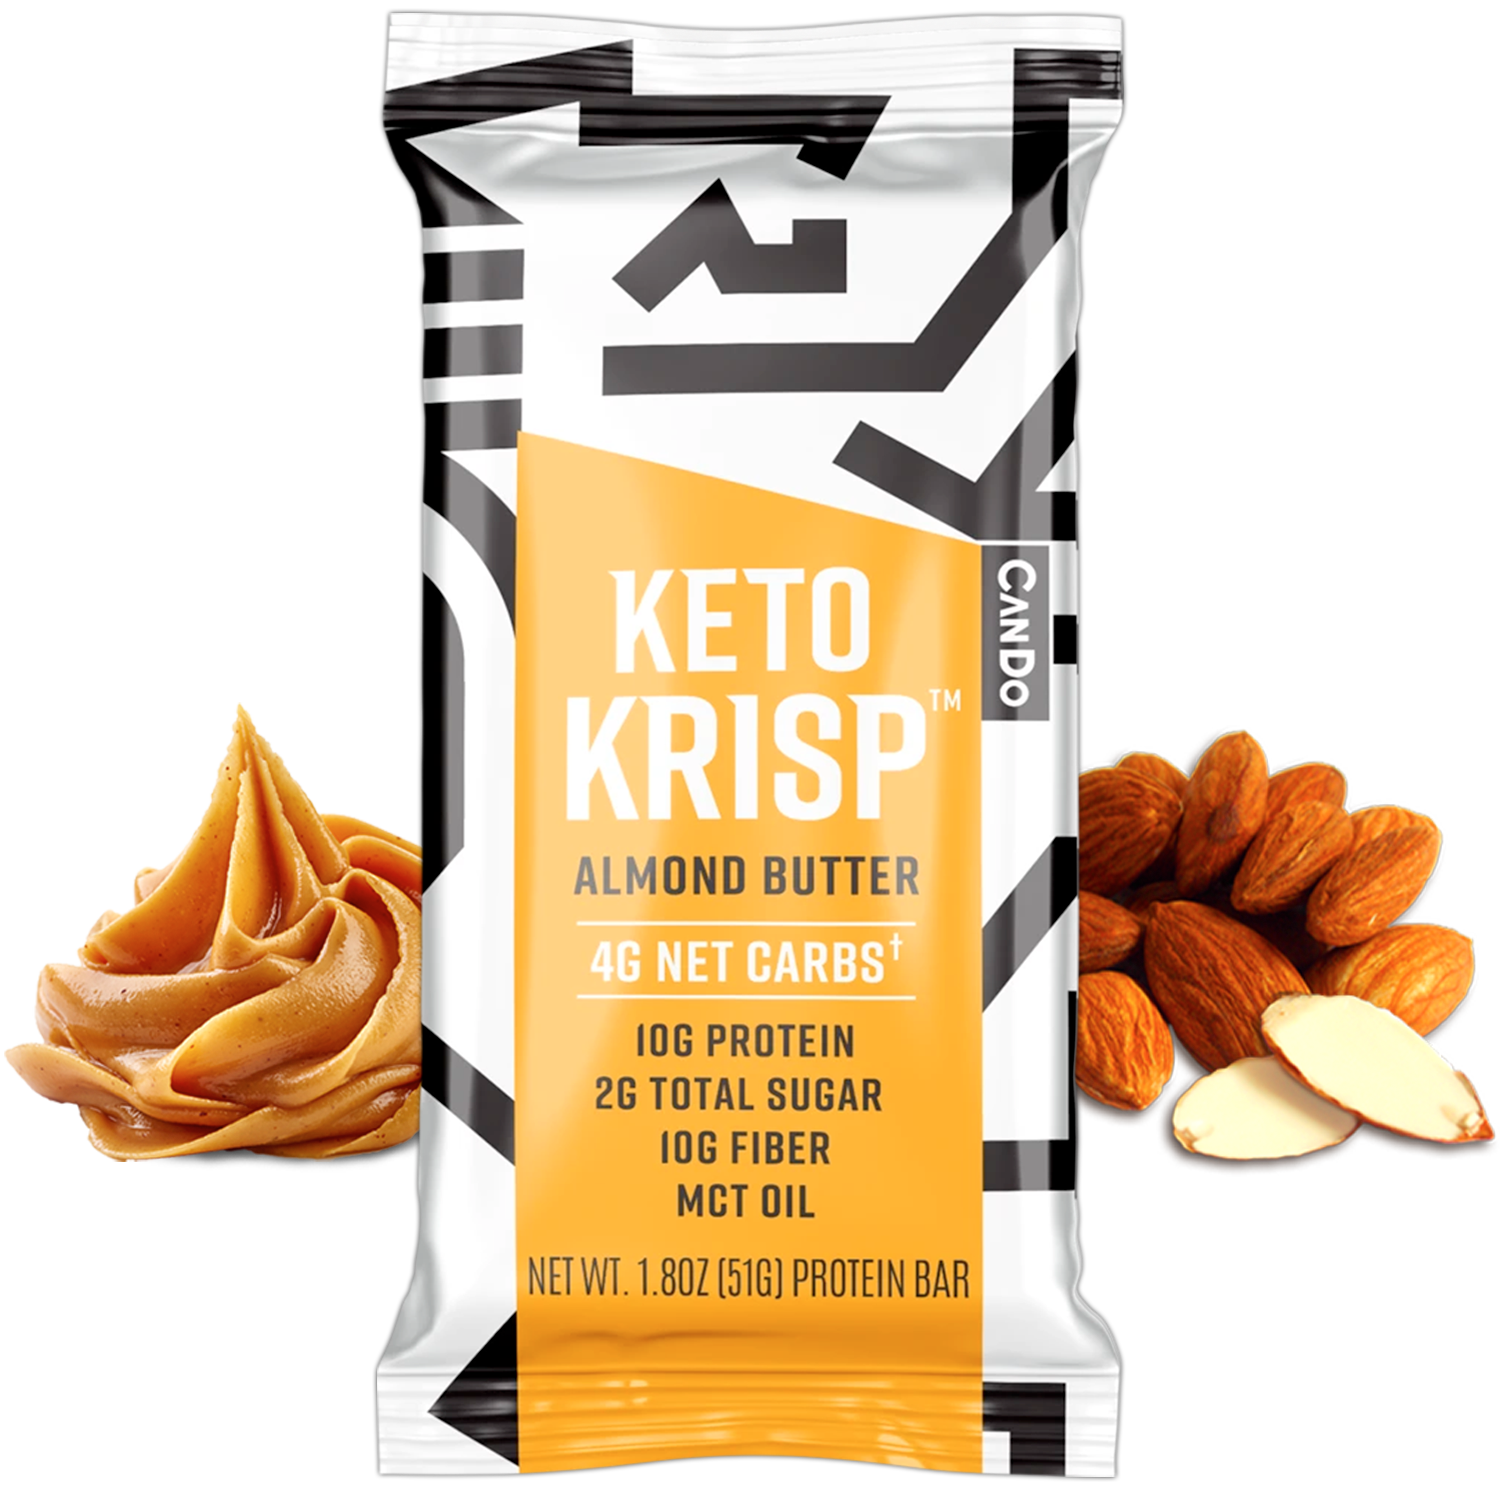 Keto Krisp Almond Butter (Pack of 12)